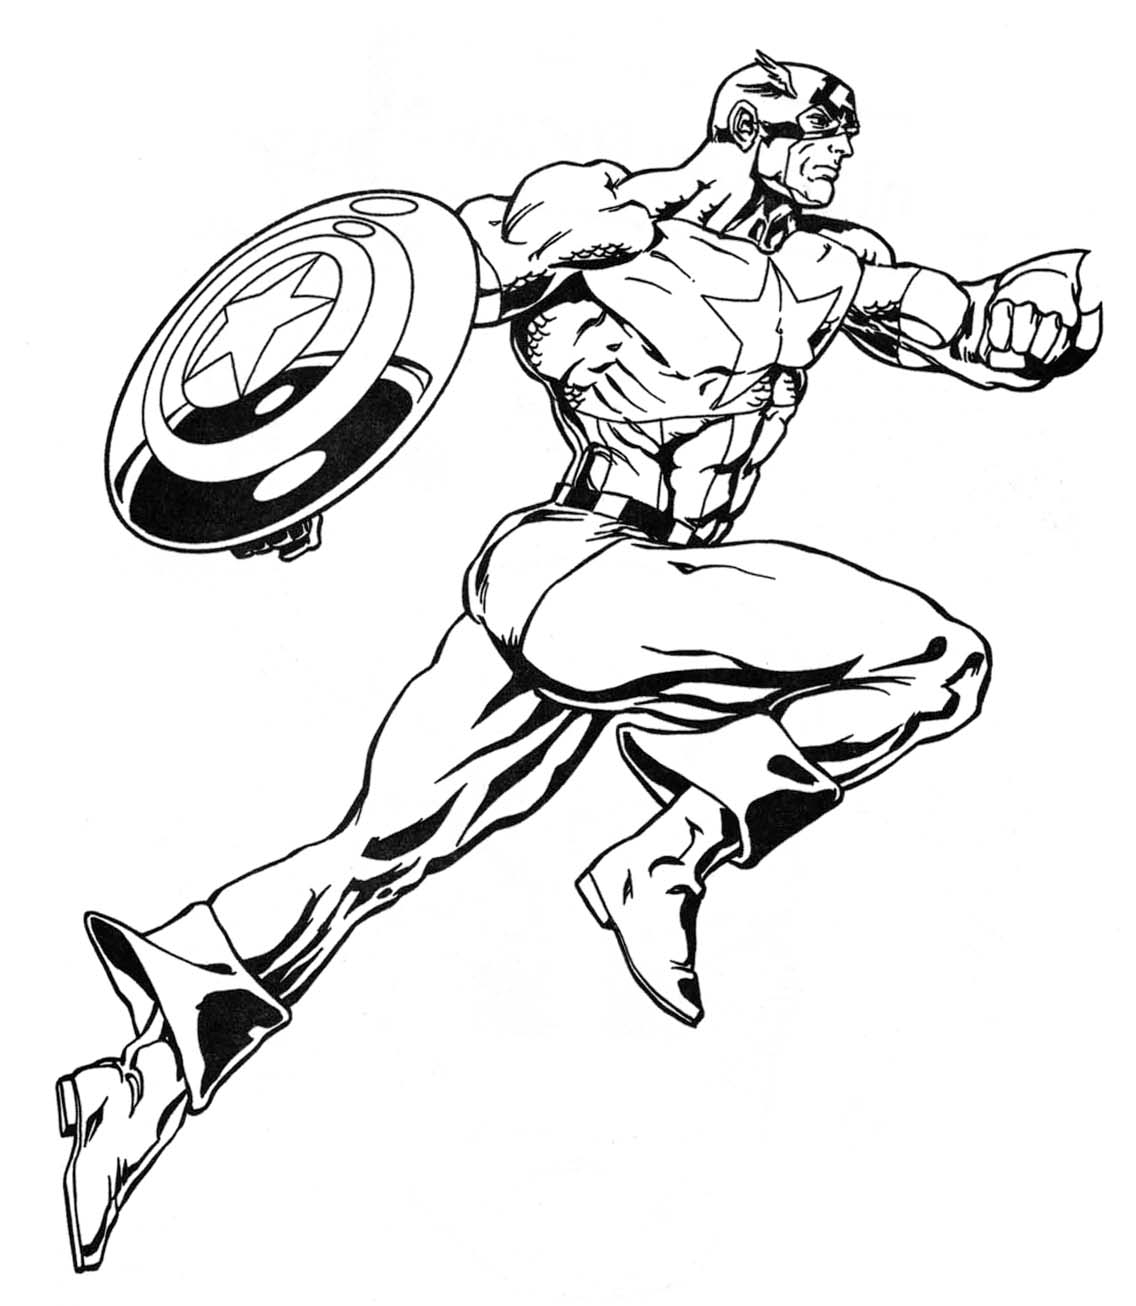 Marvel Superheroes Drawing at GetDrawings Free download